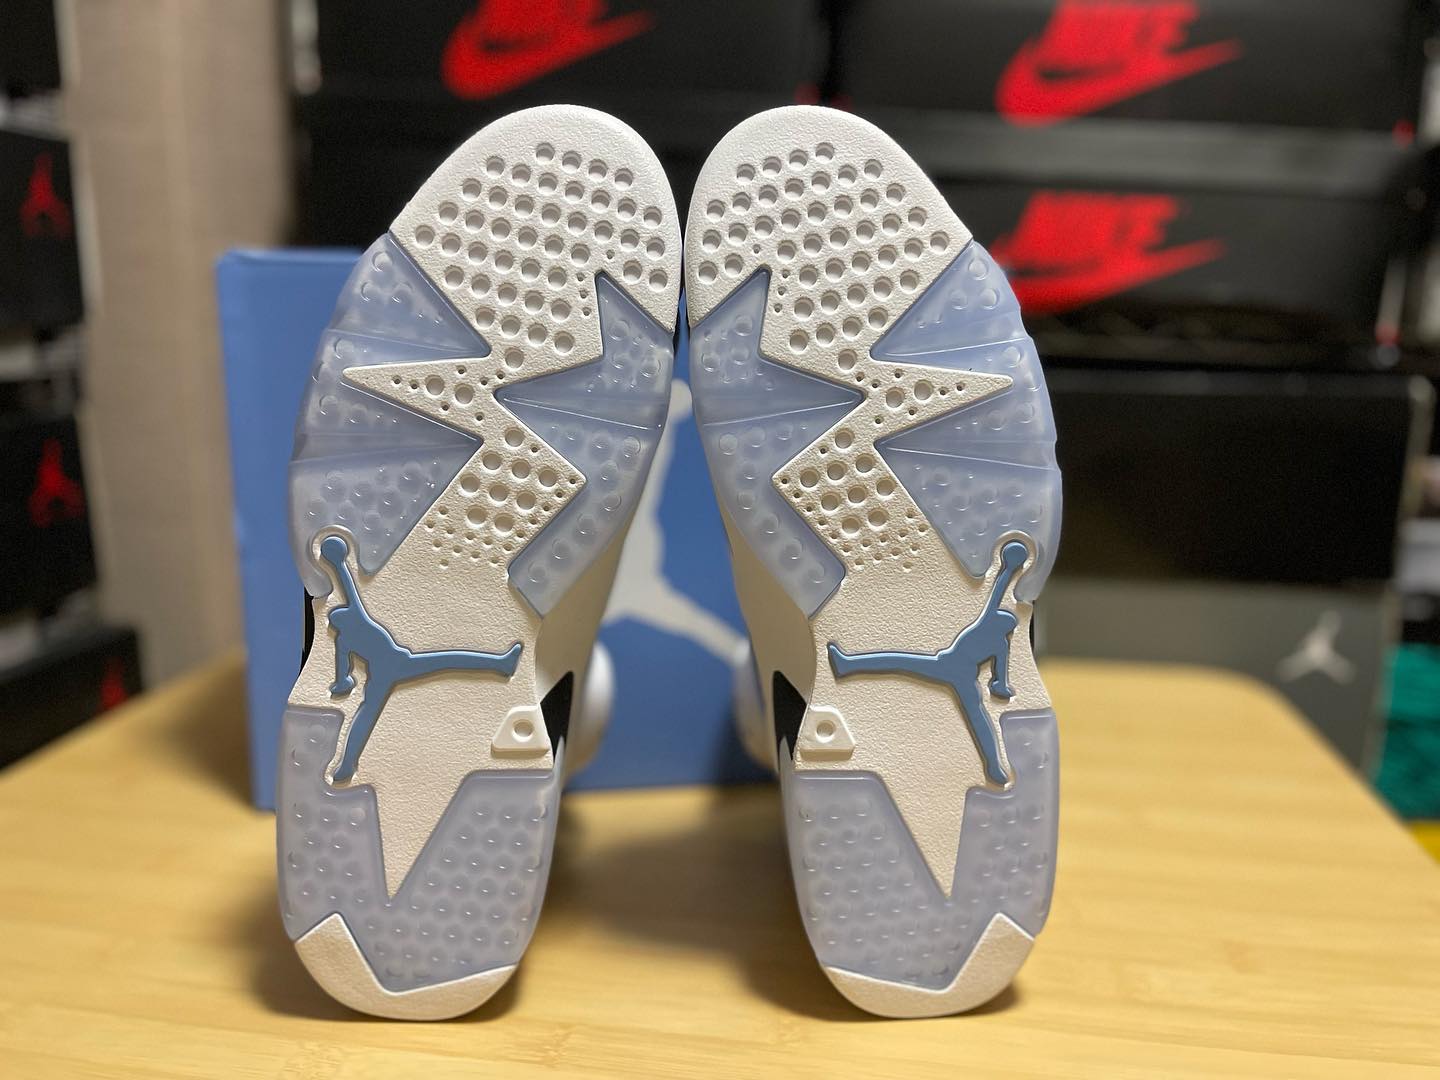 Nike Air Jordan 6 AJ6 大学蓝北卡蓝复古篮球鞋正品实拍 对比细节图_2